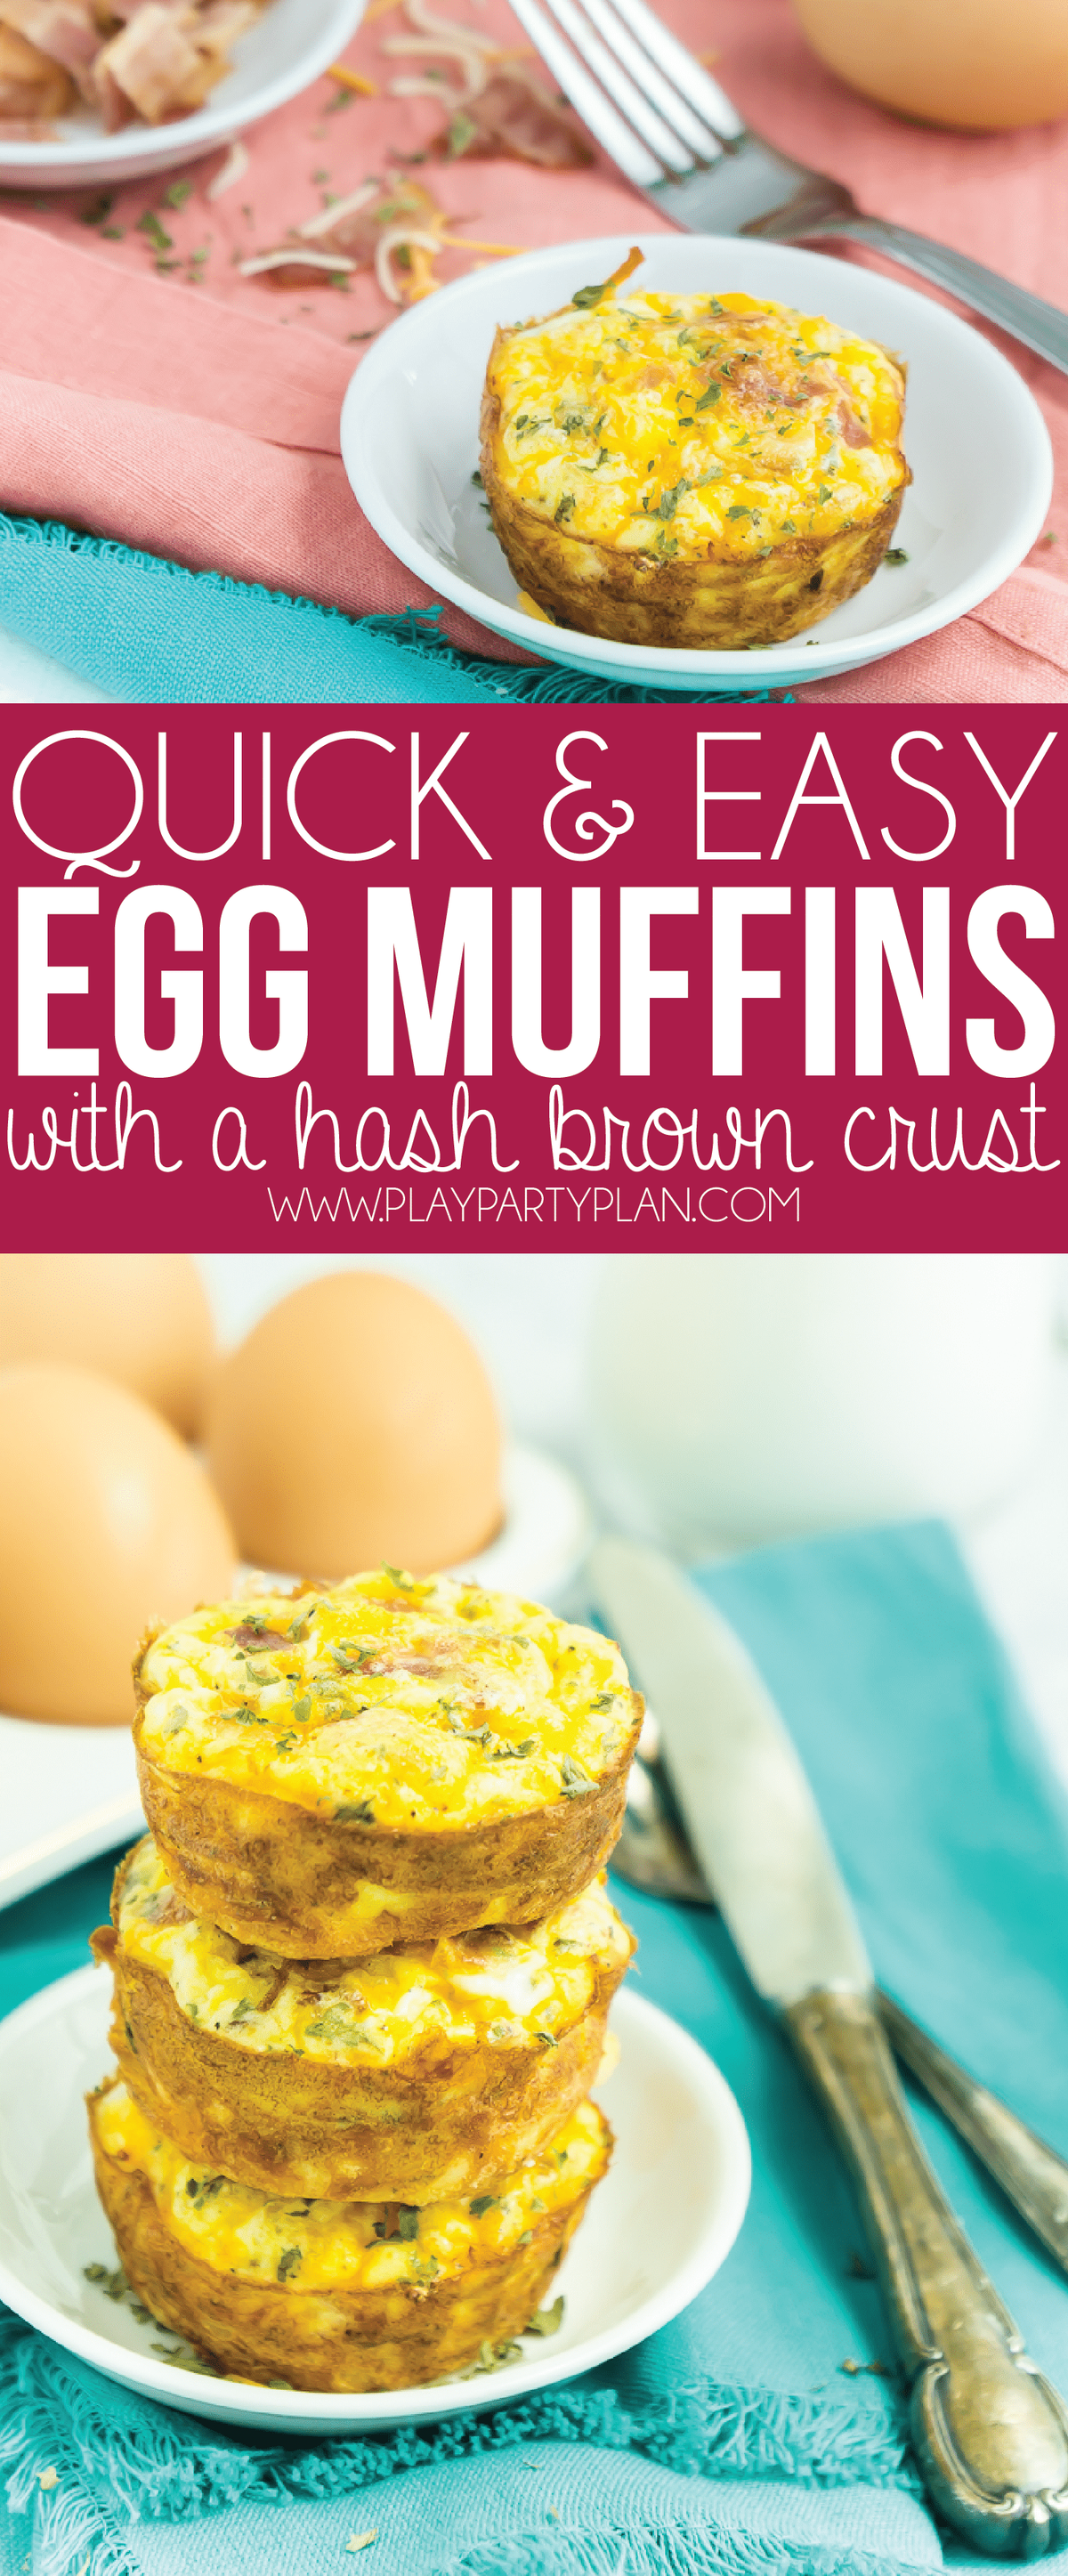 En iyi yumurta ve haşlanmış kahvaltı kekleri! Çocuklar veya yetişkinler için mükemmel ve yapımı çok kolay